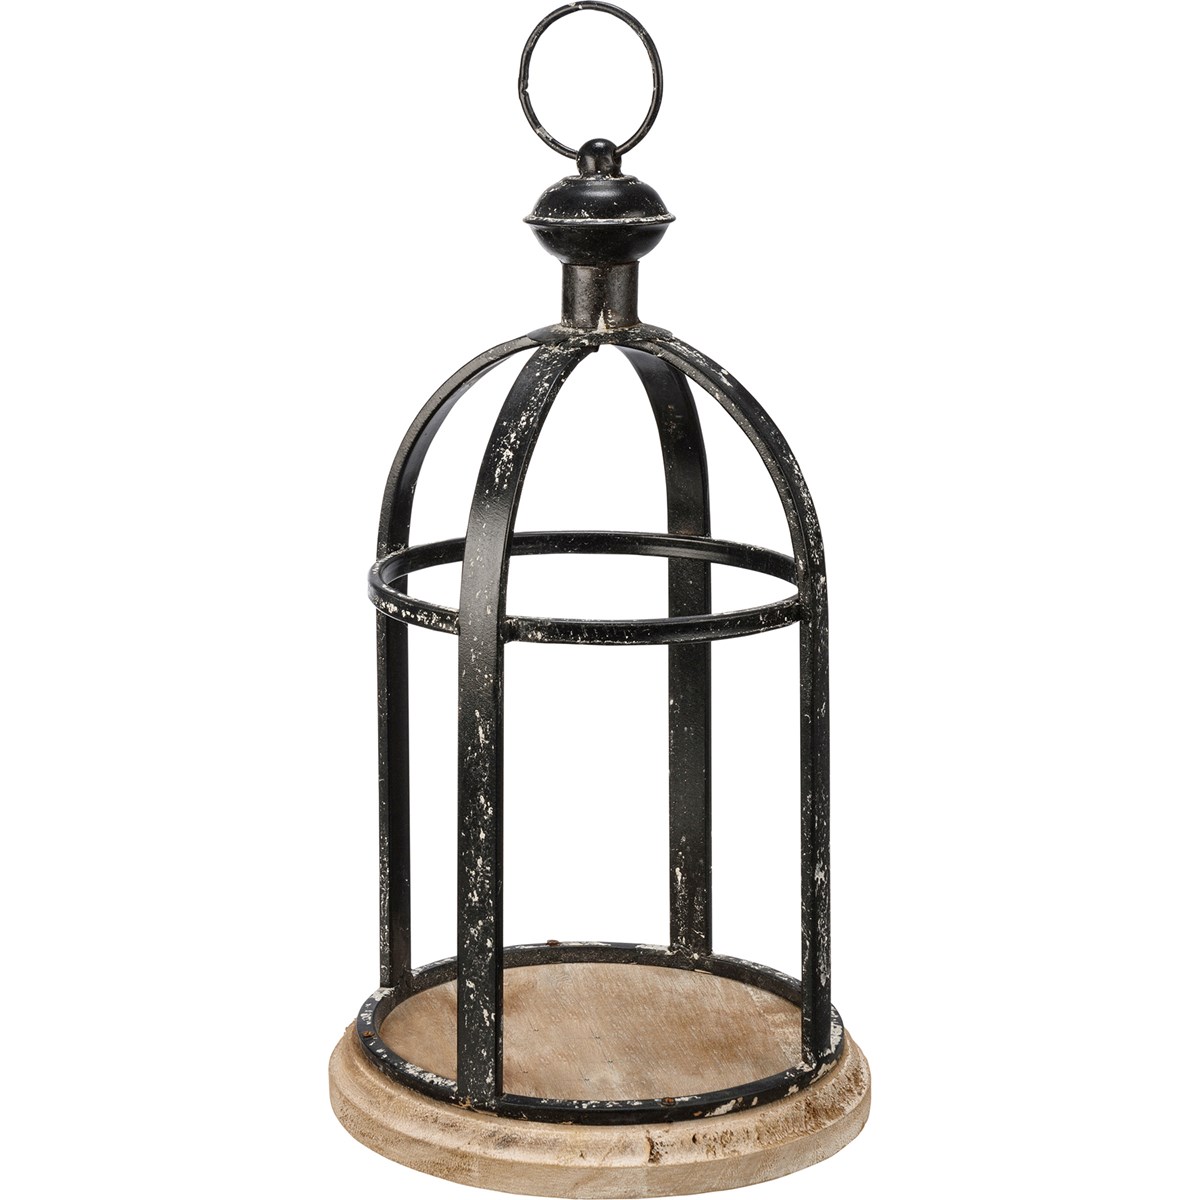 Bird Cage Lantern - Metal, Wood